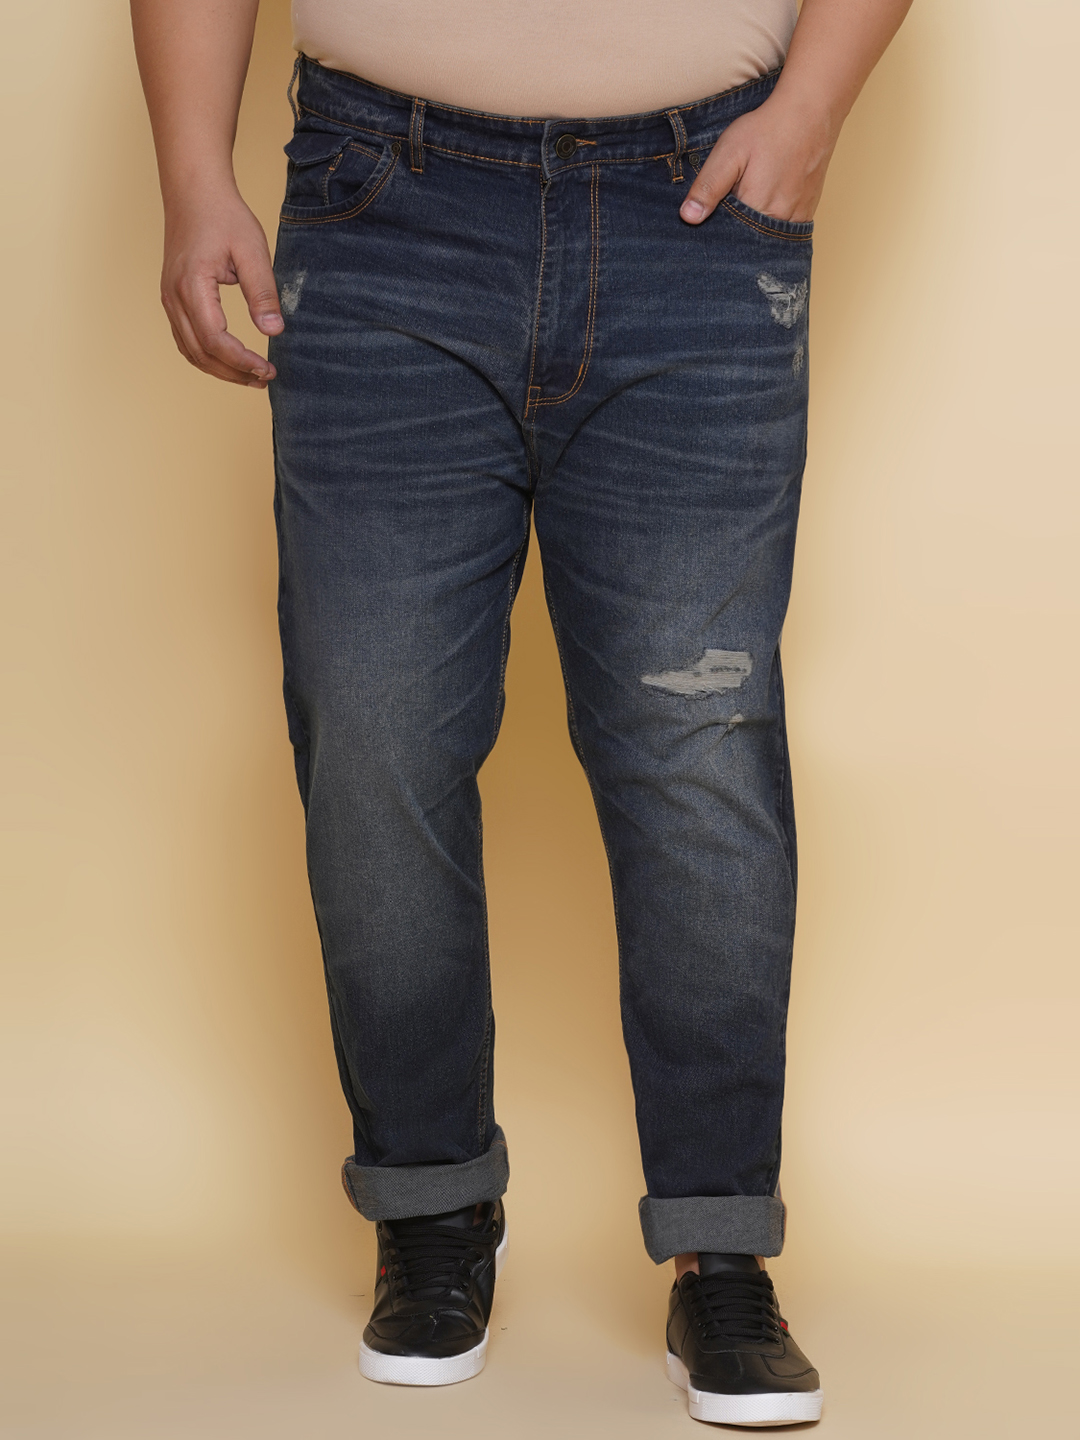 bottomwear/jeans/EJPJ25131/ejpj25131-1.jpg